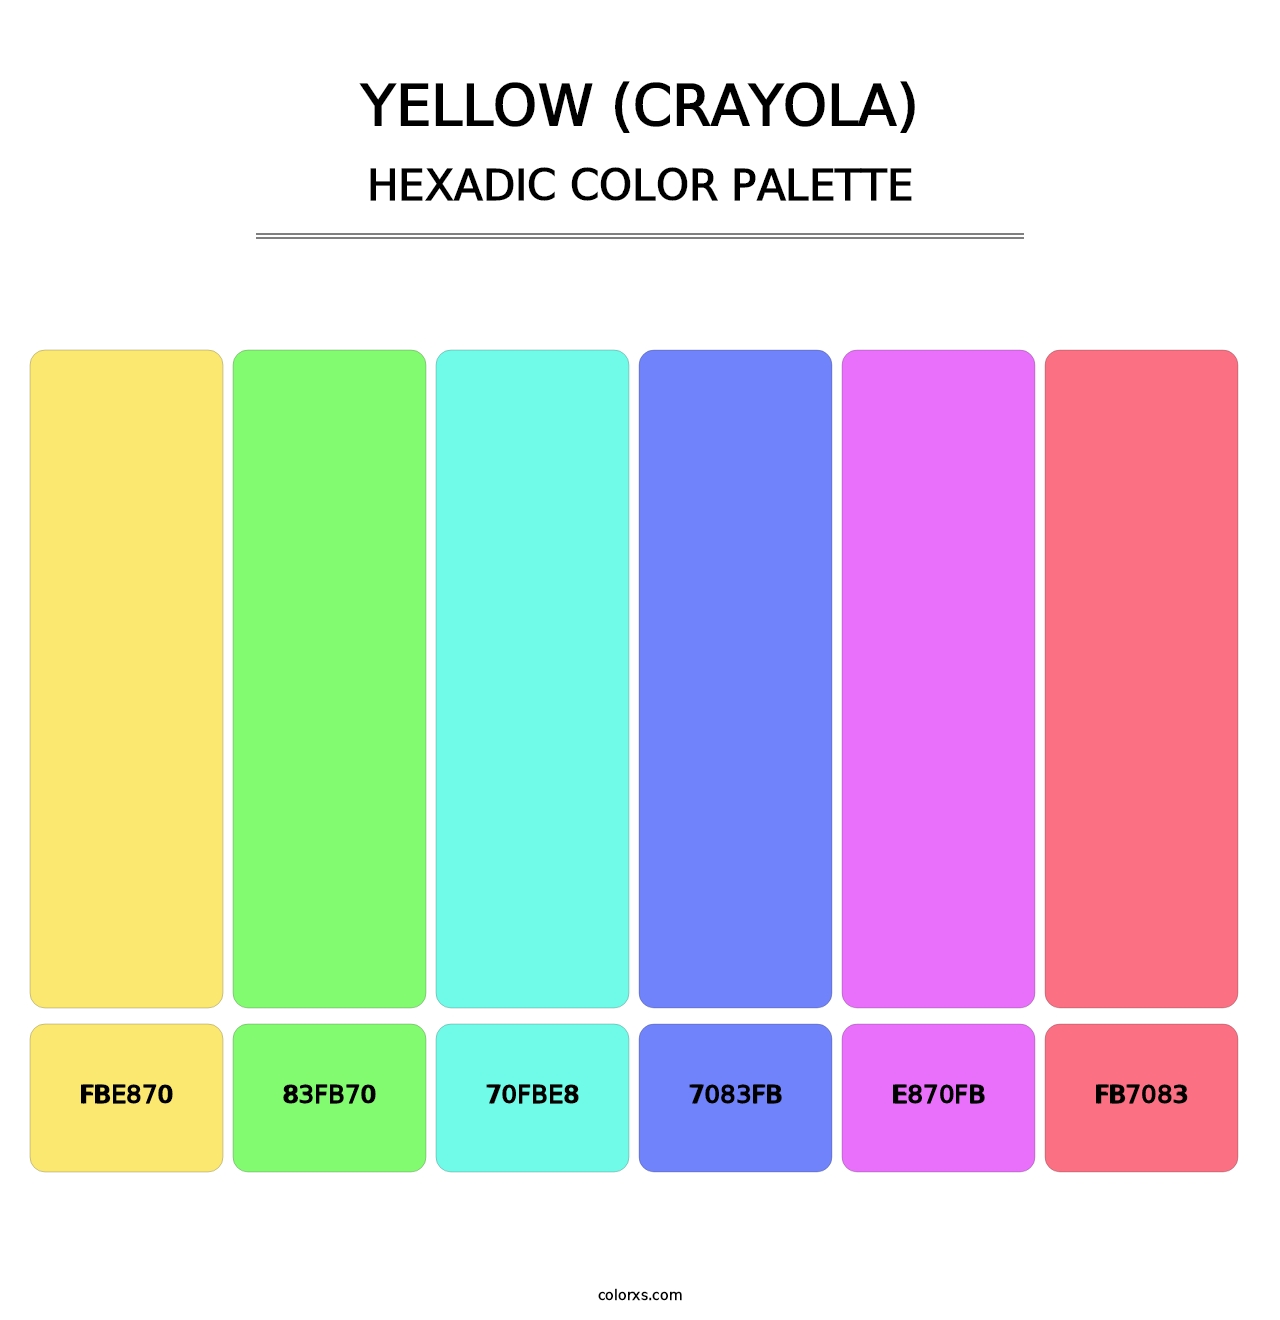 Yellow (Crayola) - Hexadic Color Palette